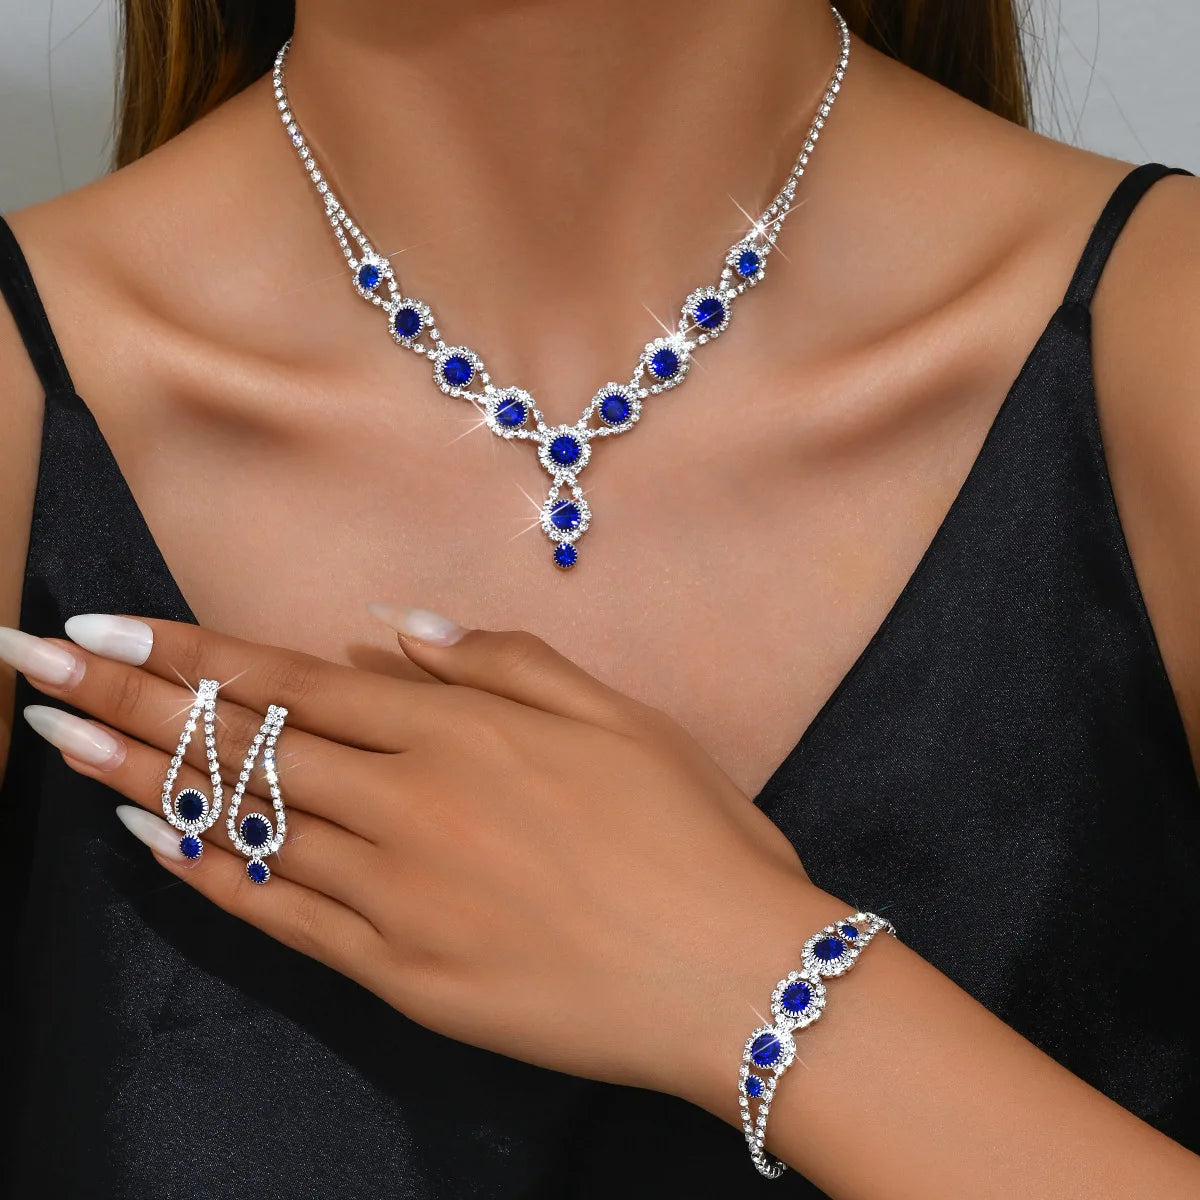 Shining Crystal Rhinestone Necklace Earrings Bracelet Jewelry Set